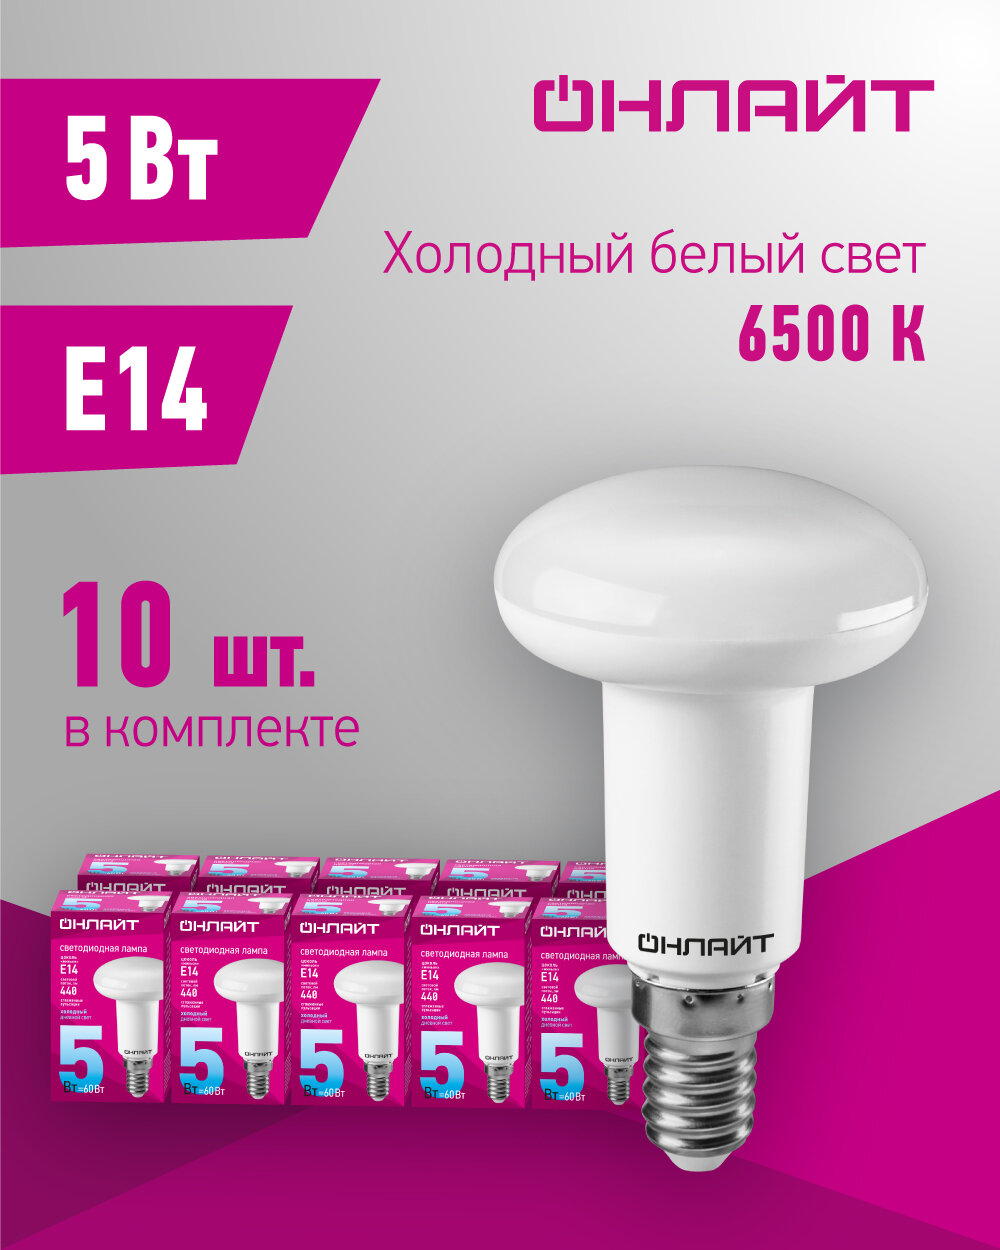 Лампа светодиодная онлайт 61 142, 5 Вт, рефлектор Е14, холодного света 6500К, упаковка 10 шт.